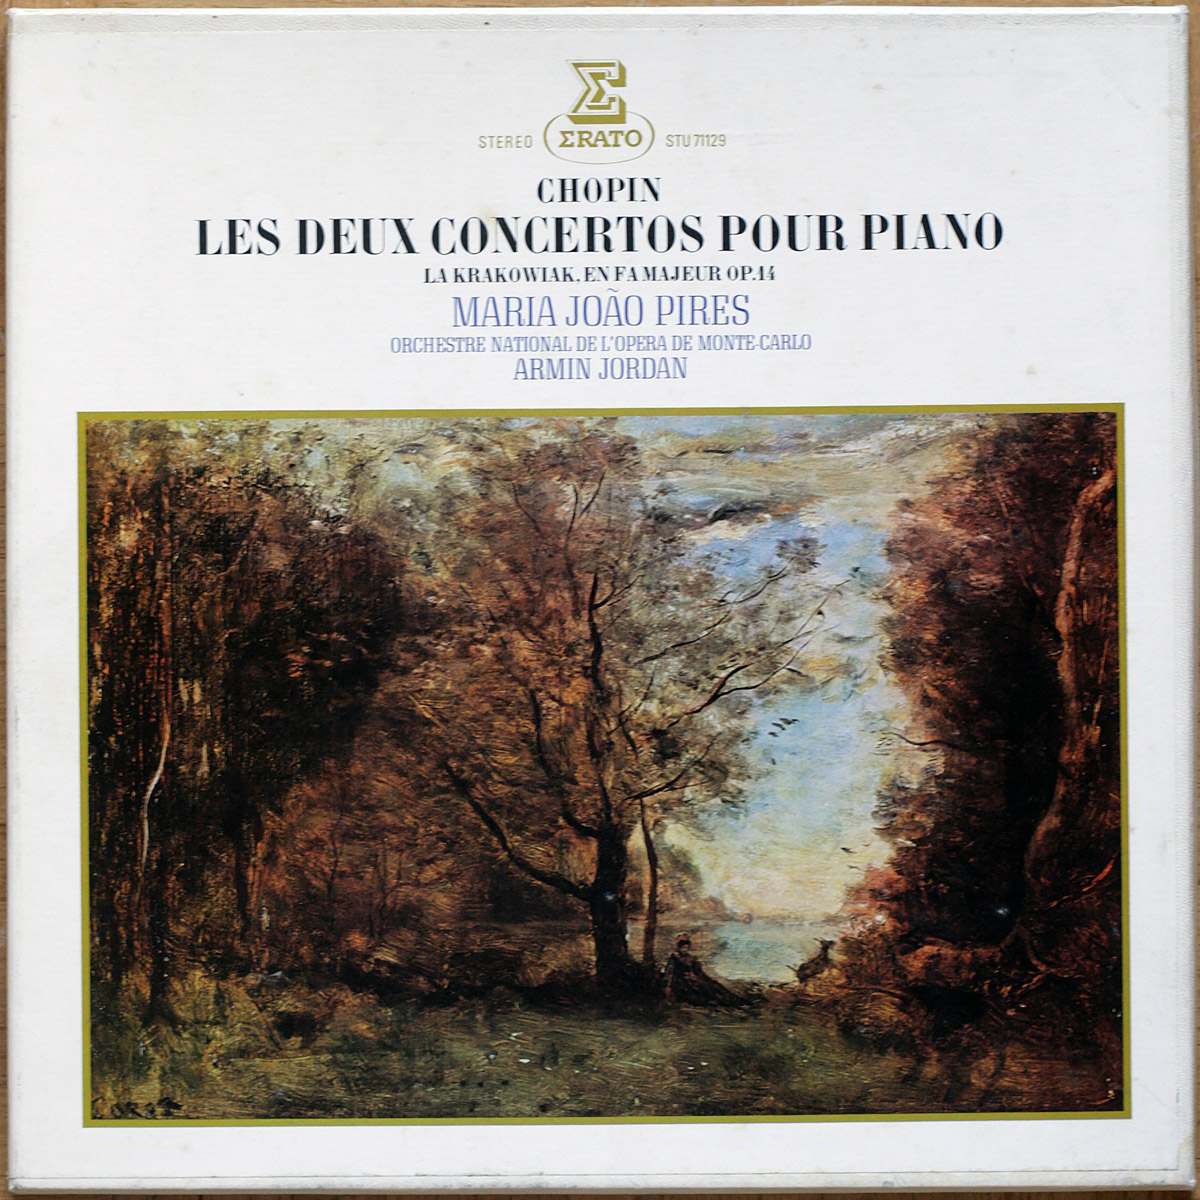 Chopin • Les concertos pour piano et orchestre n° 1 & 2 • Erato STU 71 129 • Maria João Pires • Orchestre National de l'Opéra de Monte-Carlo • Armin Jordan